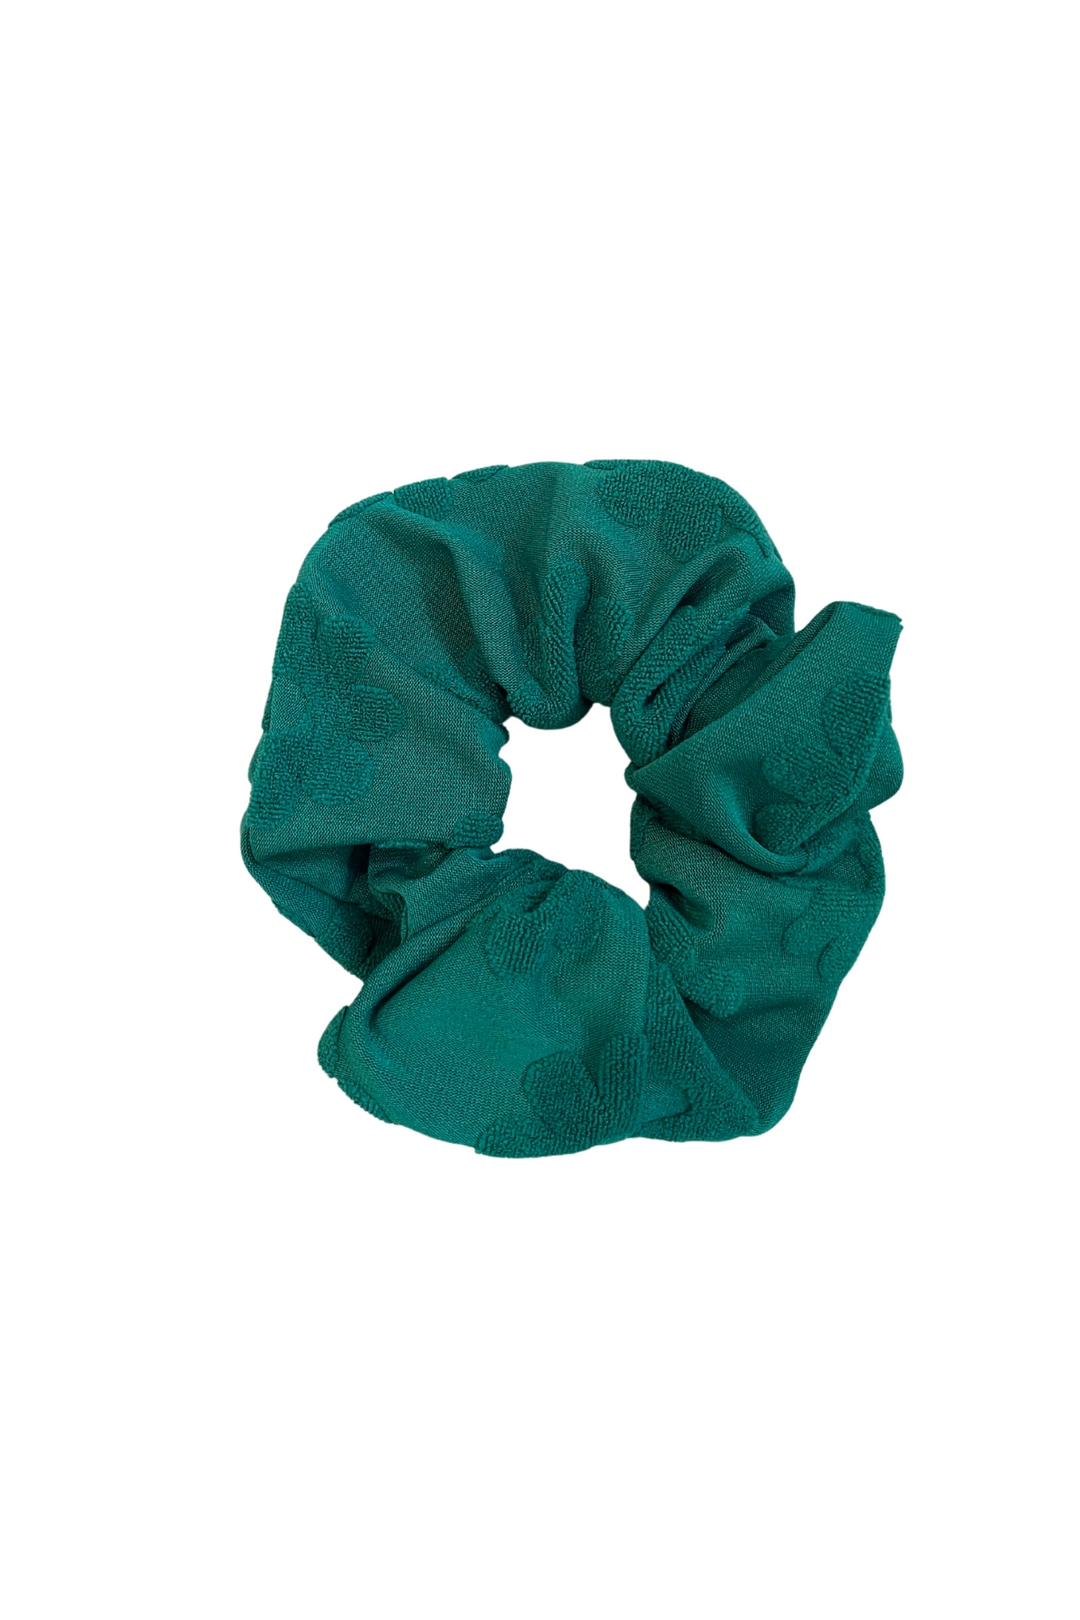 Green Flower Power Scrunchie